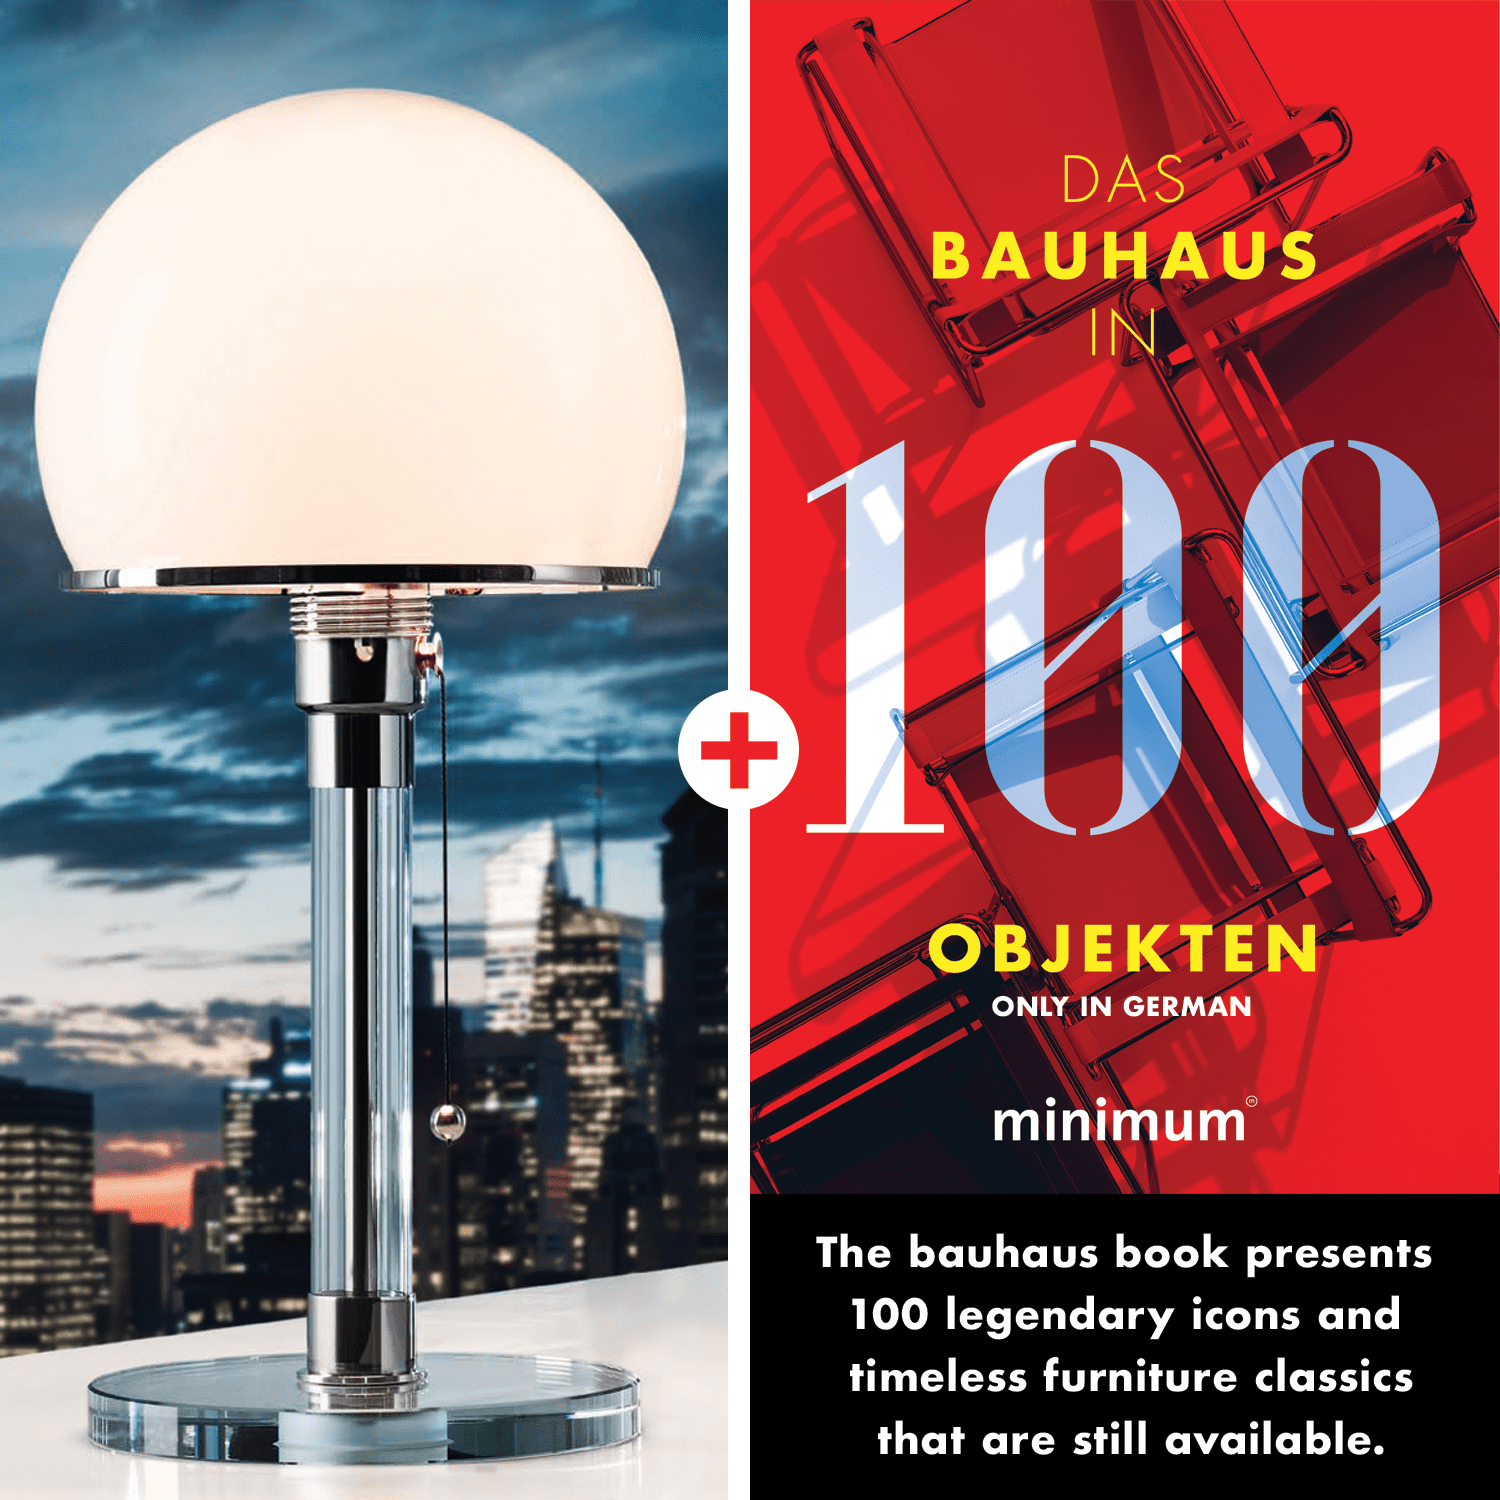 Afbeelding van Wagenfeld Lamp WG 24 + Bauhaus in 100 Objecten